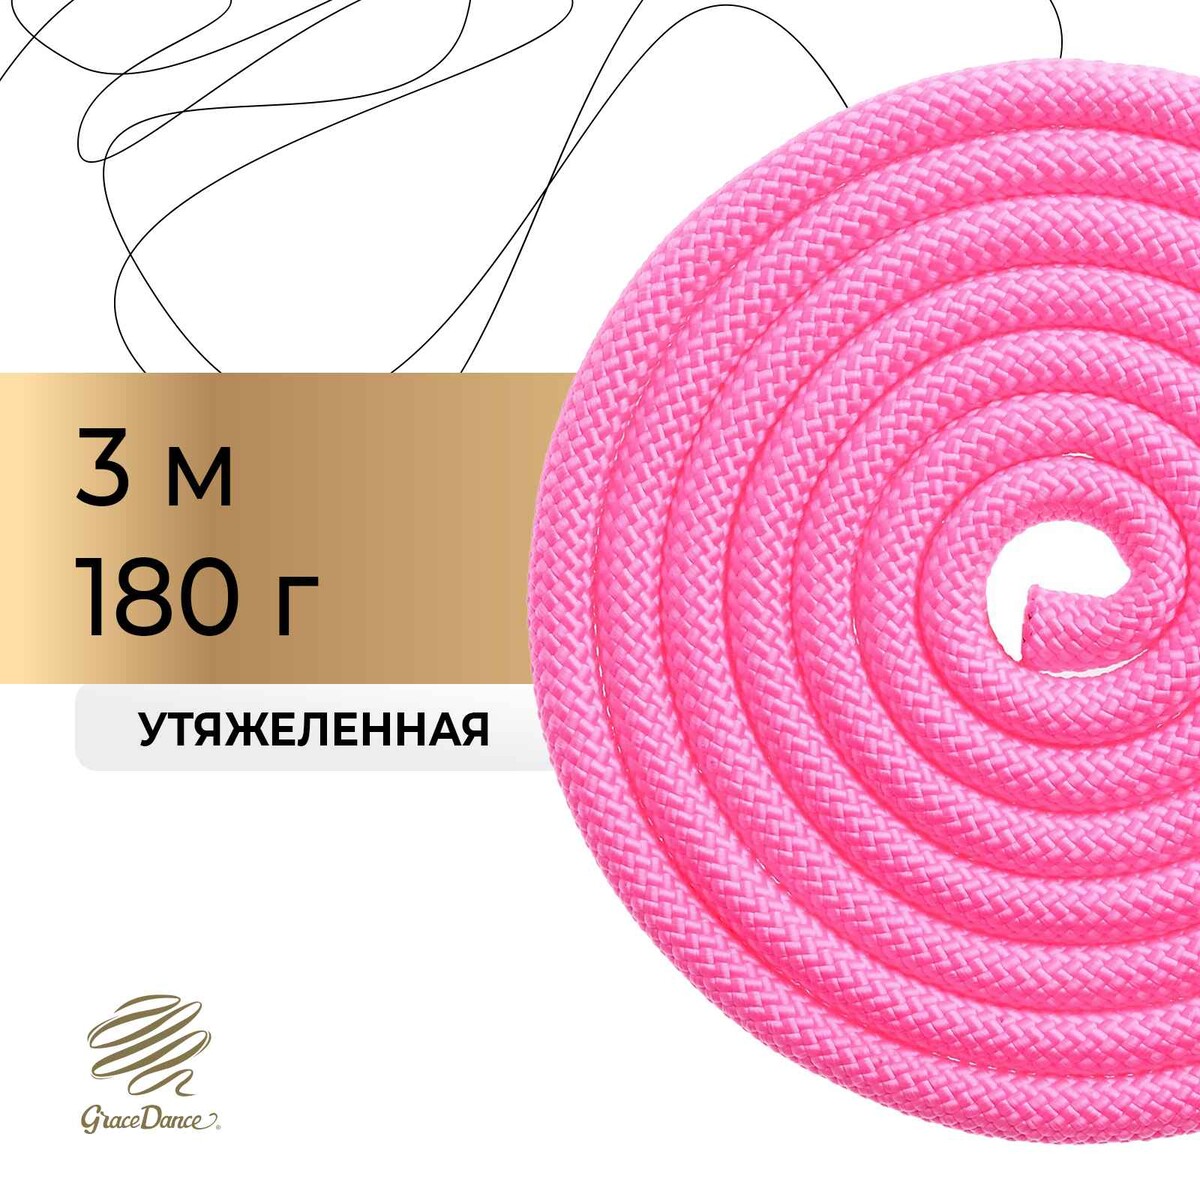 Скакалка для художественной гимнастики утяжеленная grace dance, 3 м, цвет розовый